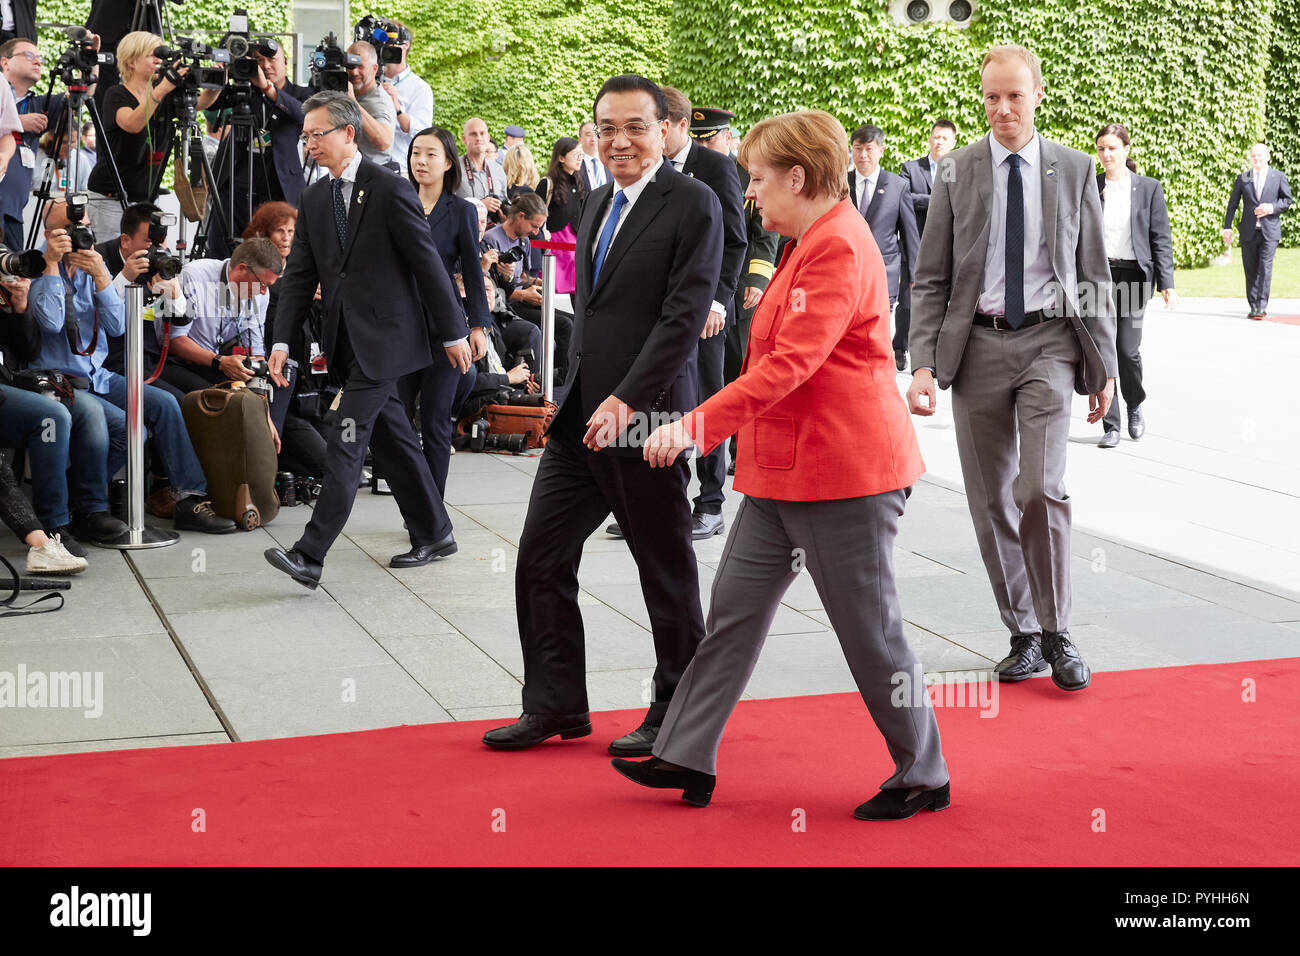 Berlin, Allemagne - La Chancelière allemande Angela Merkel et le Premier ministre chinois Li Keqiang quitter la Cour du Chancelier d'Honneur après avoir reçu les honneurs militaires. Banque D'Images